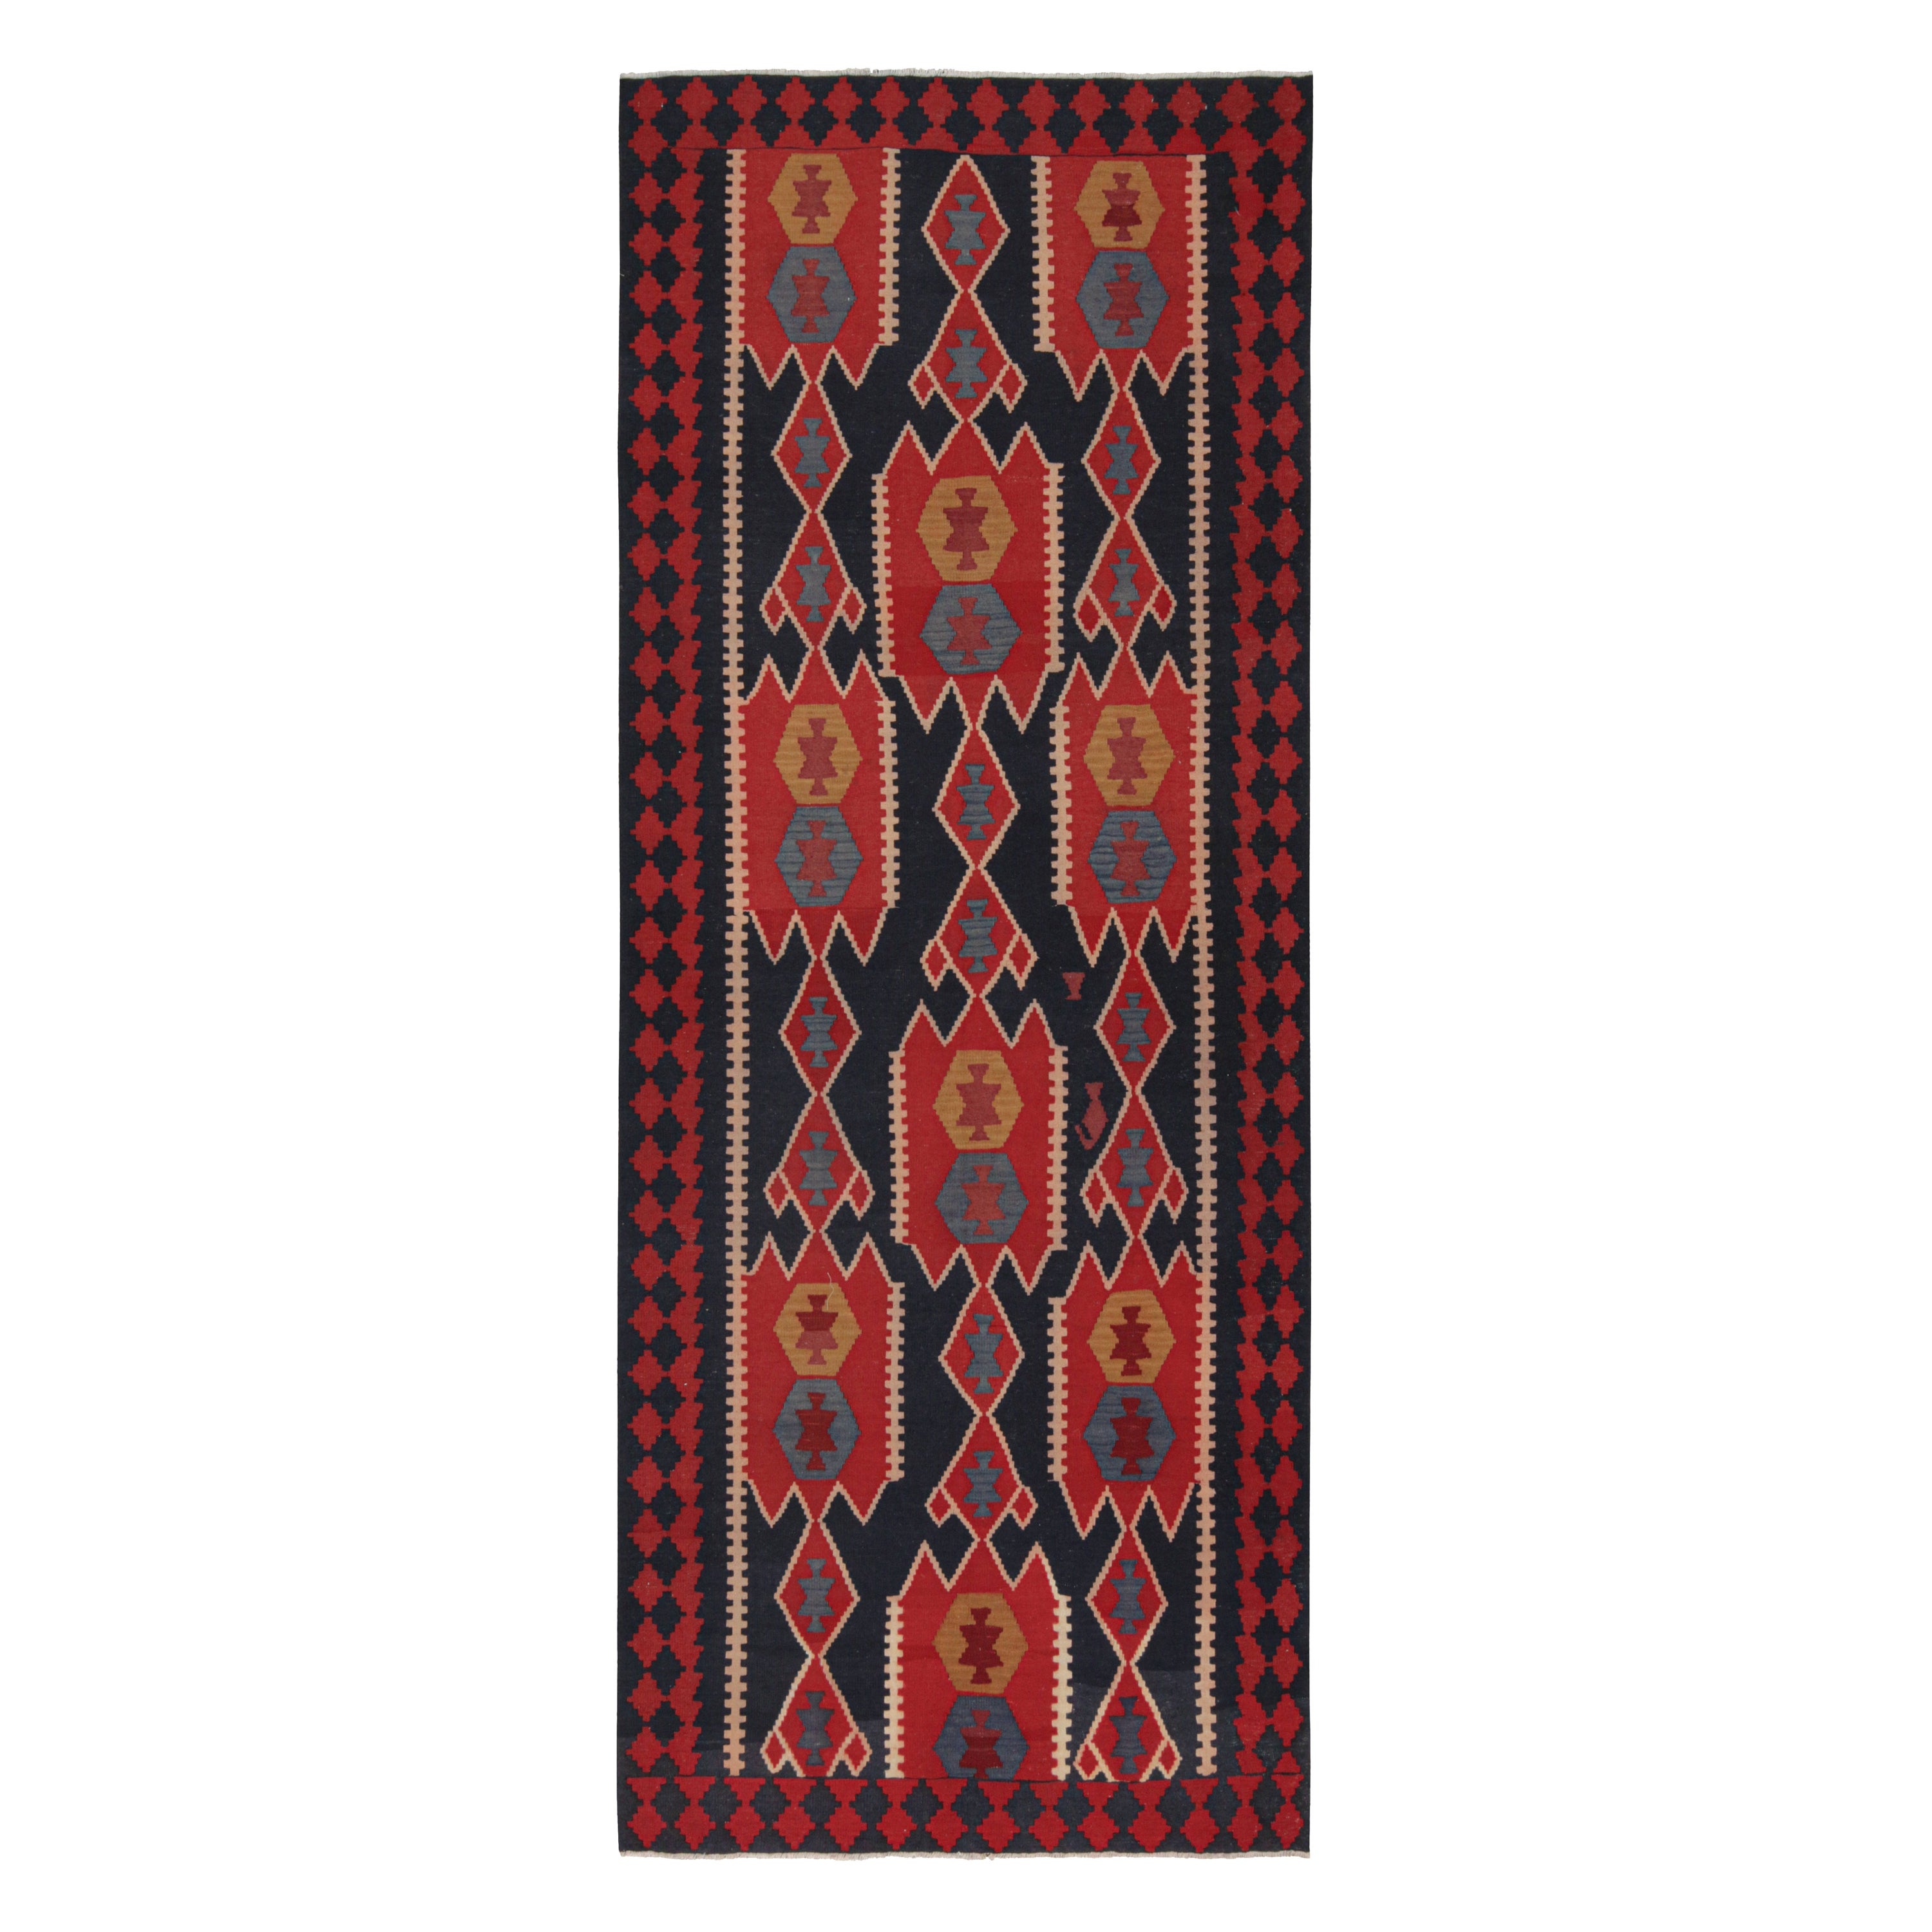 Tapis Kilim persan vintage bleu marine avec motifs géométriques rouges par Rug & Kilim